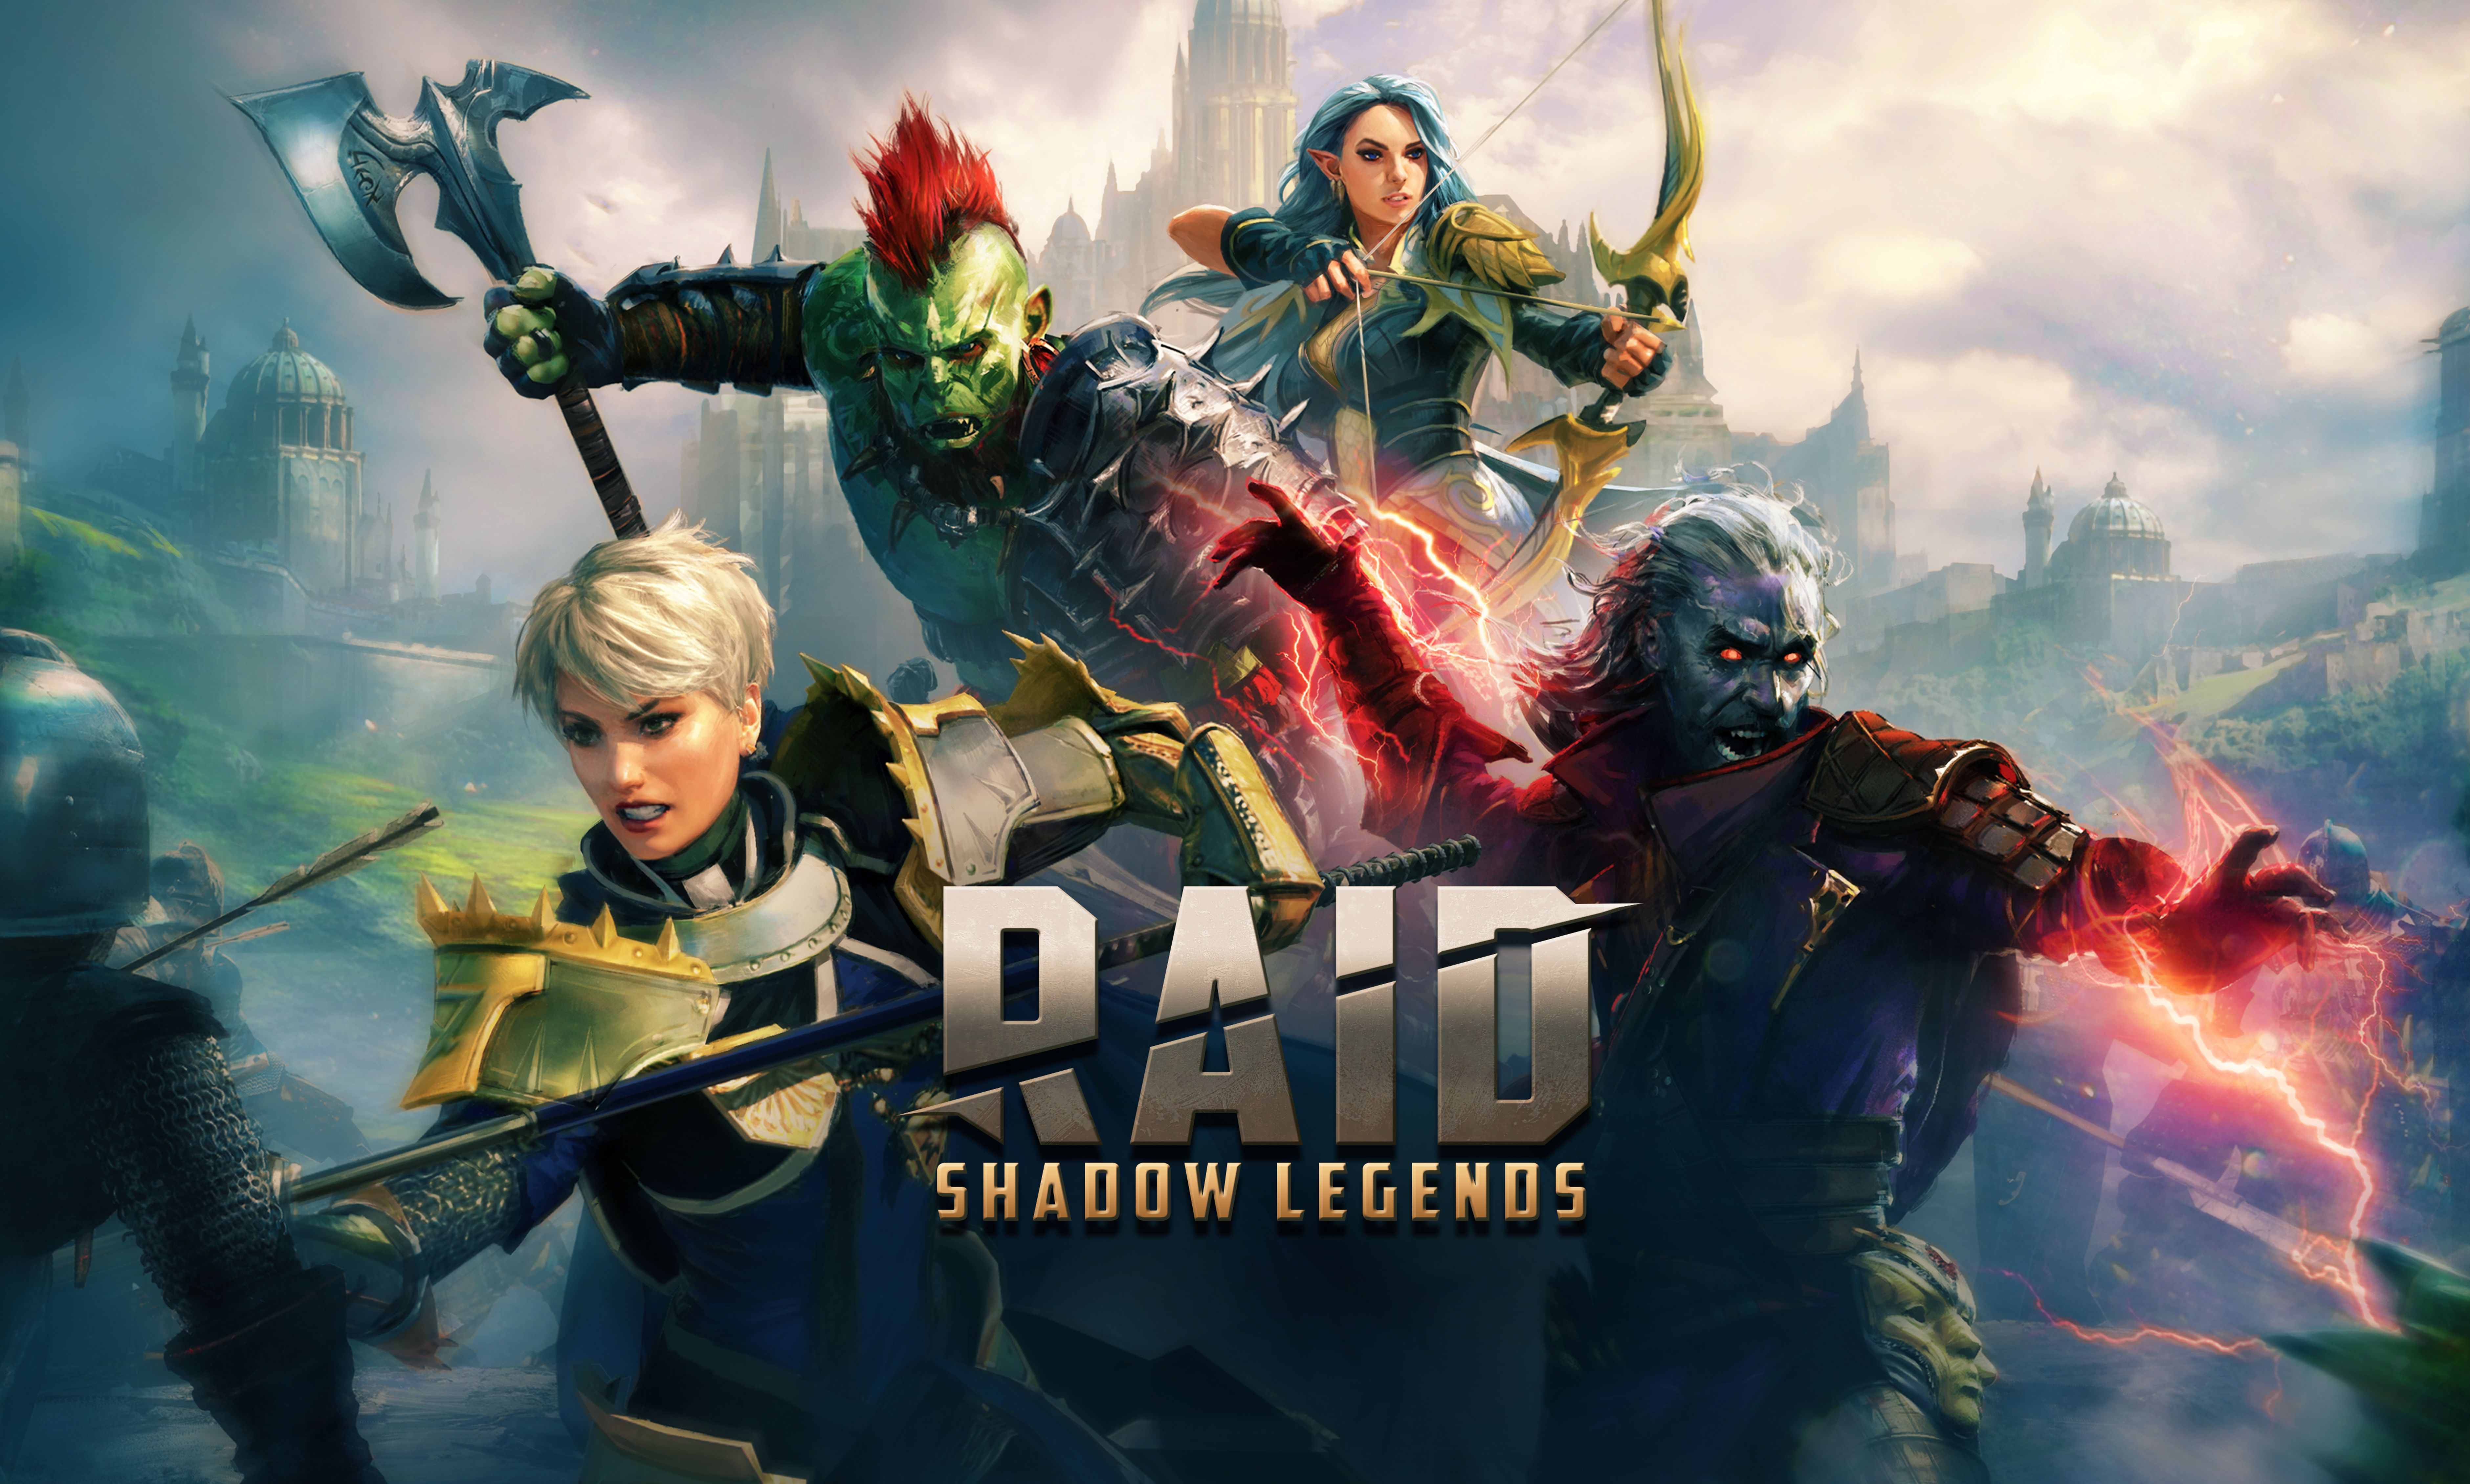 ninja raid: shadow legends ad